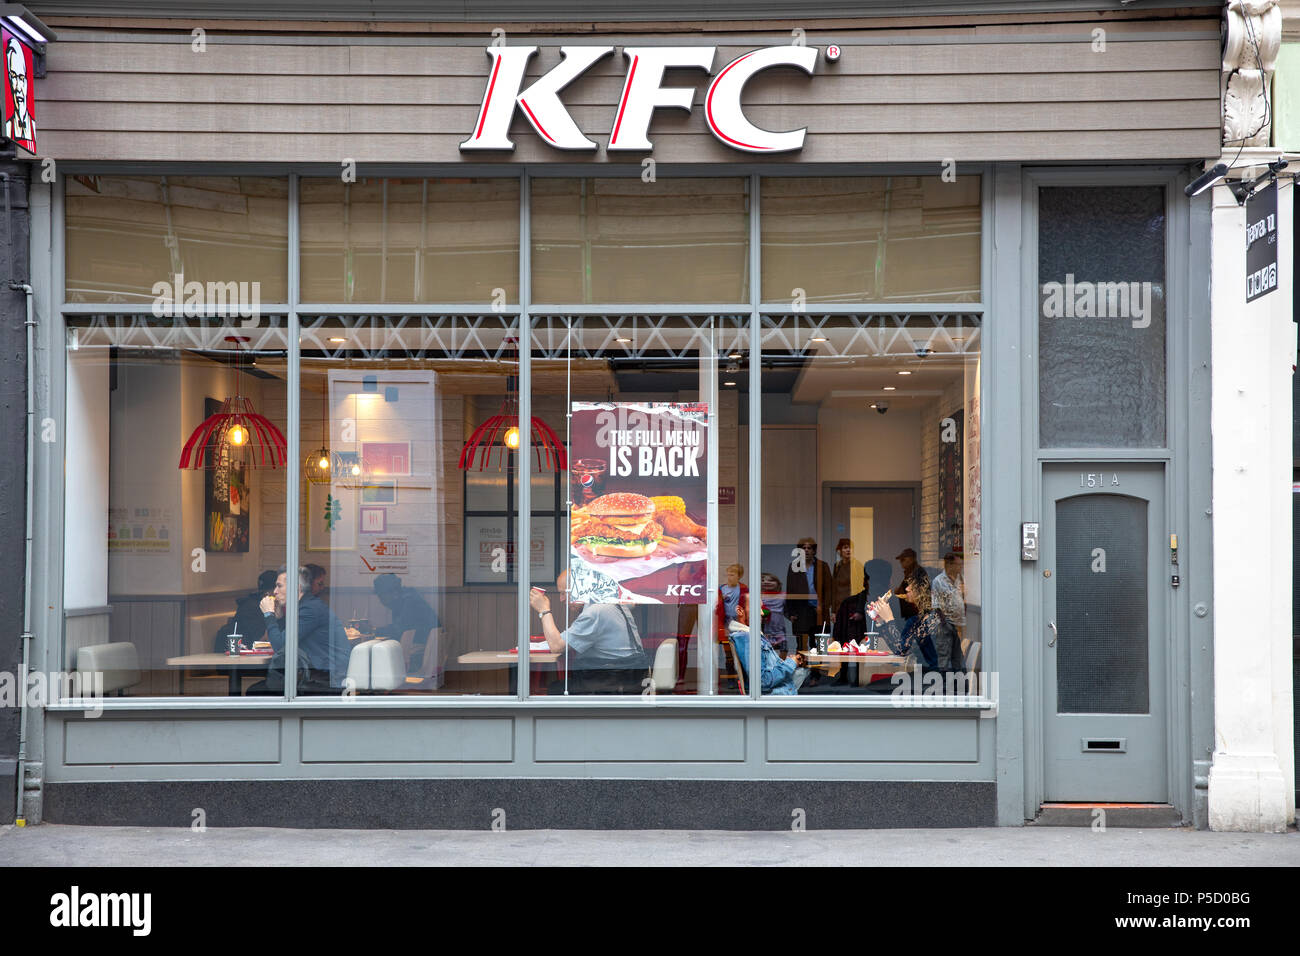 KFC restaurant, Uk Stock Photo